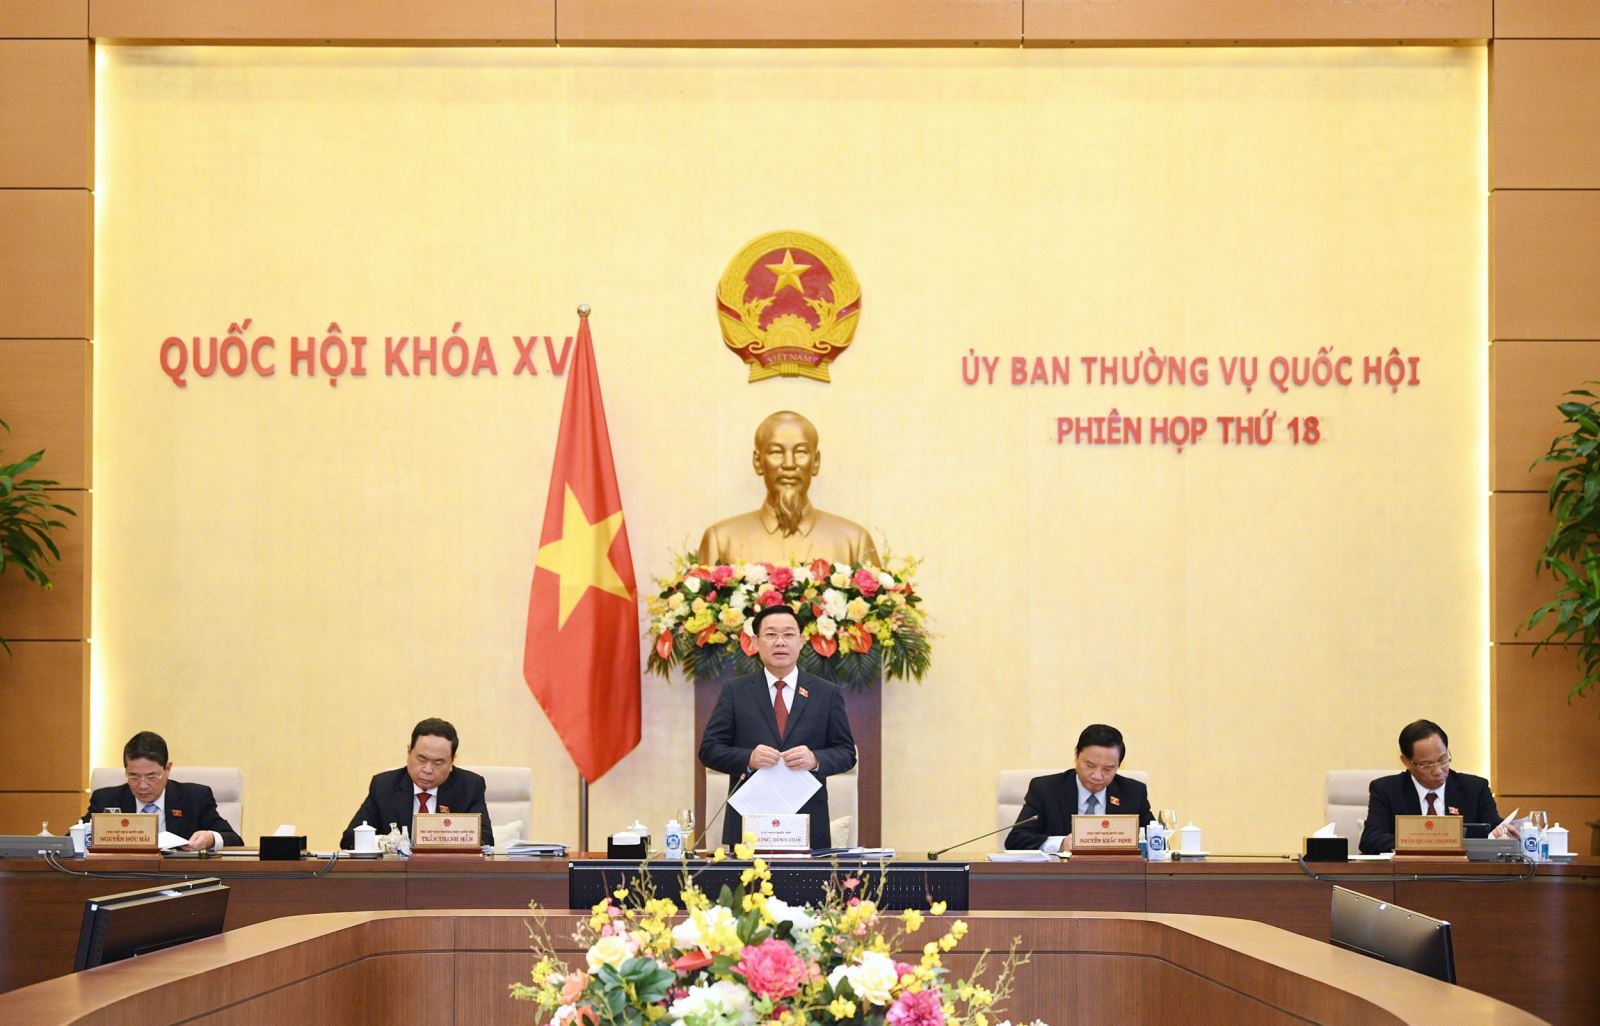 Đồng chí Vương Đình Huệ - Chủ tịch Quốc hội và các đồng chí Phó Chủ tịch Quốc hội đã chủ trì và điều hành Phiên họp thứ 18 của Ủy ban Thường vụ Quốc hội